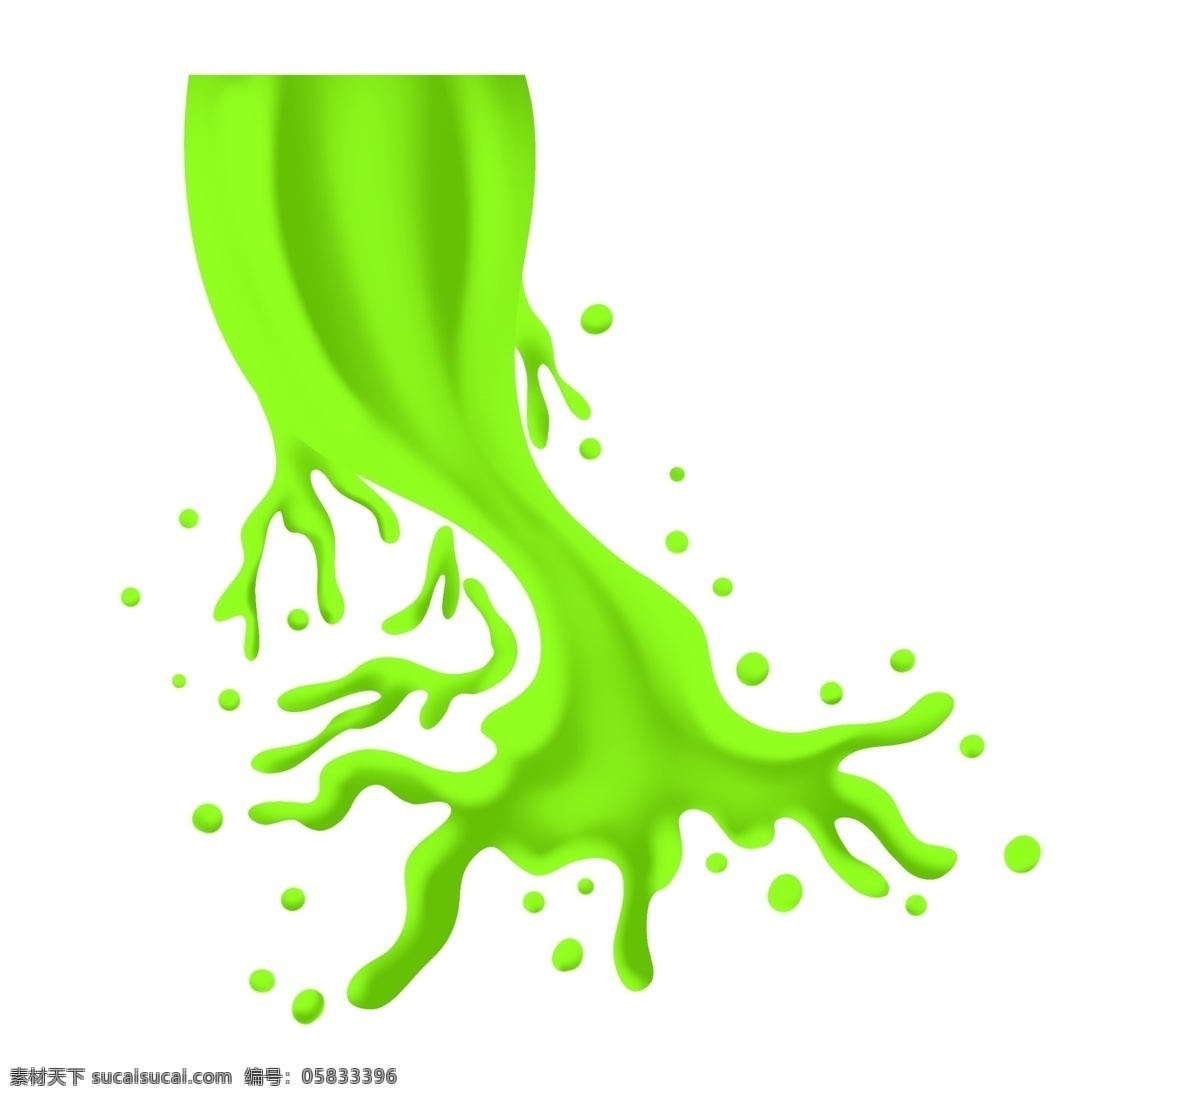 液体 水花 四溅 飞溅 插画 飞溅的液体 绿色液体 彩色水 破落泼洒 液体水花四溅 喷溅 洒水 喷溅插画